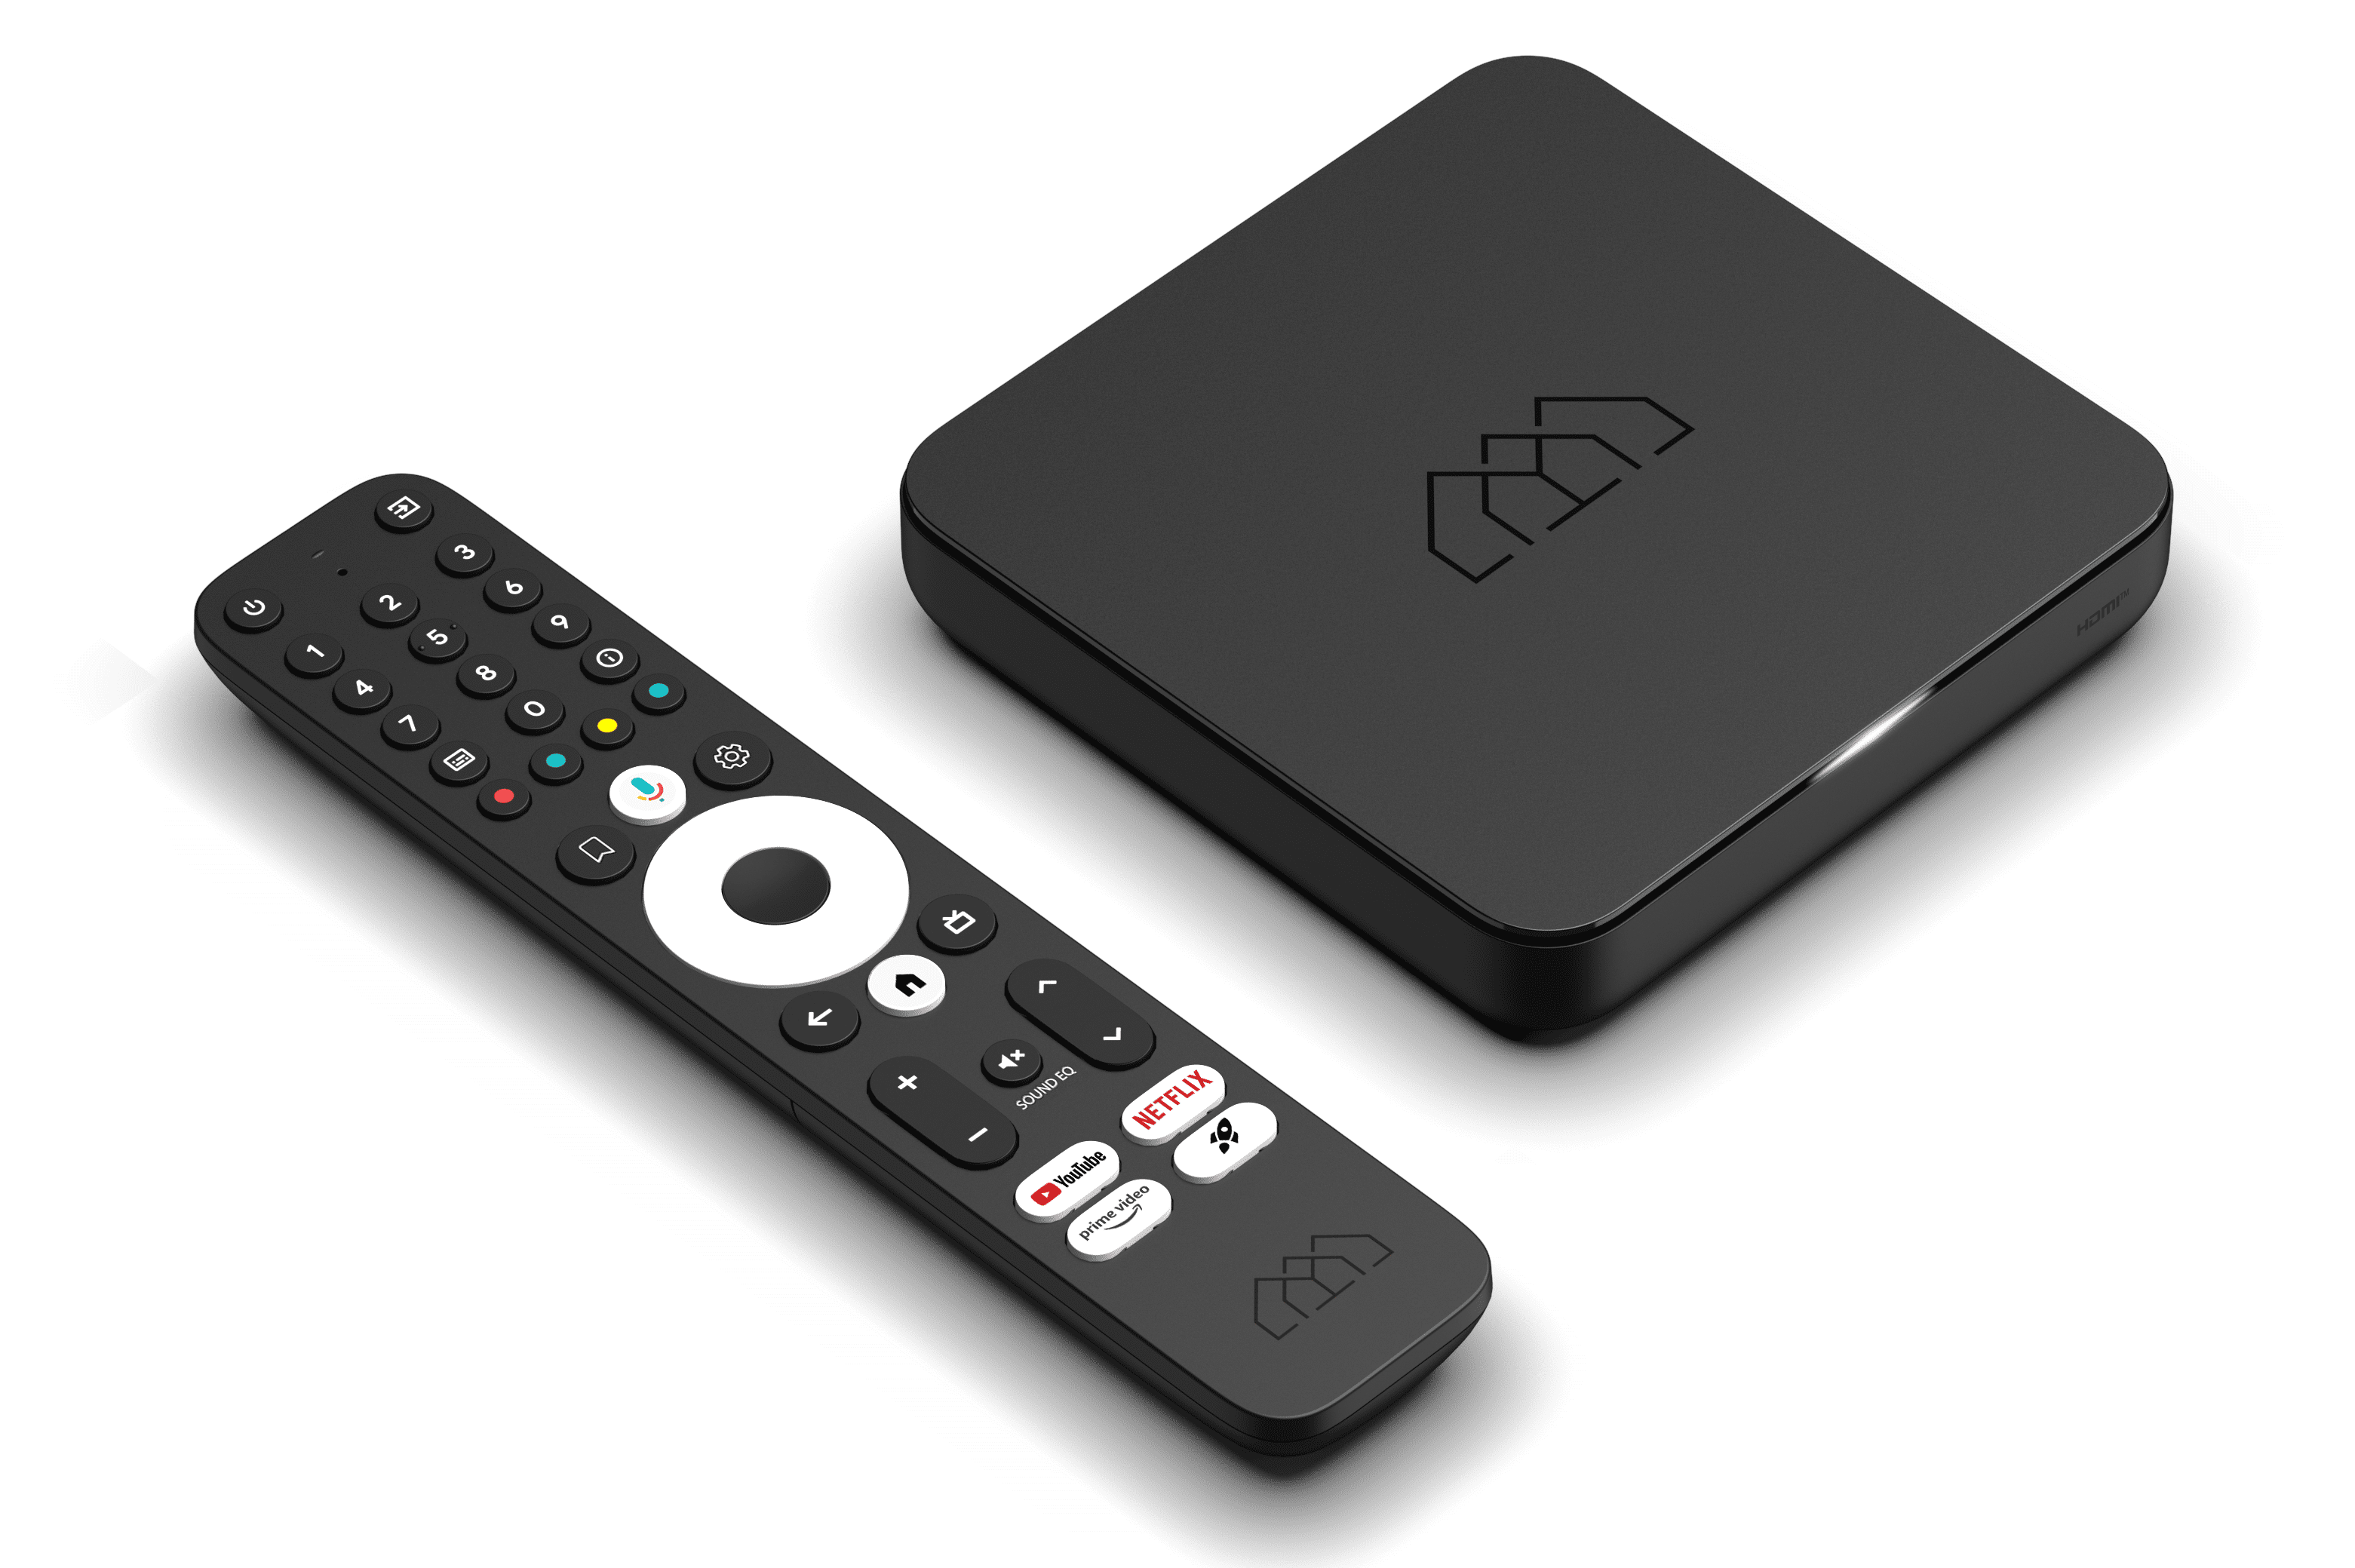 Caixa De Tv Android Mxq Pro Smart Box 4k Ultra Hd 100% Original